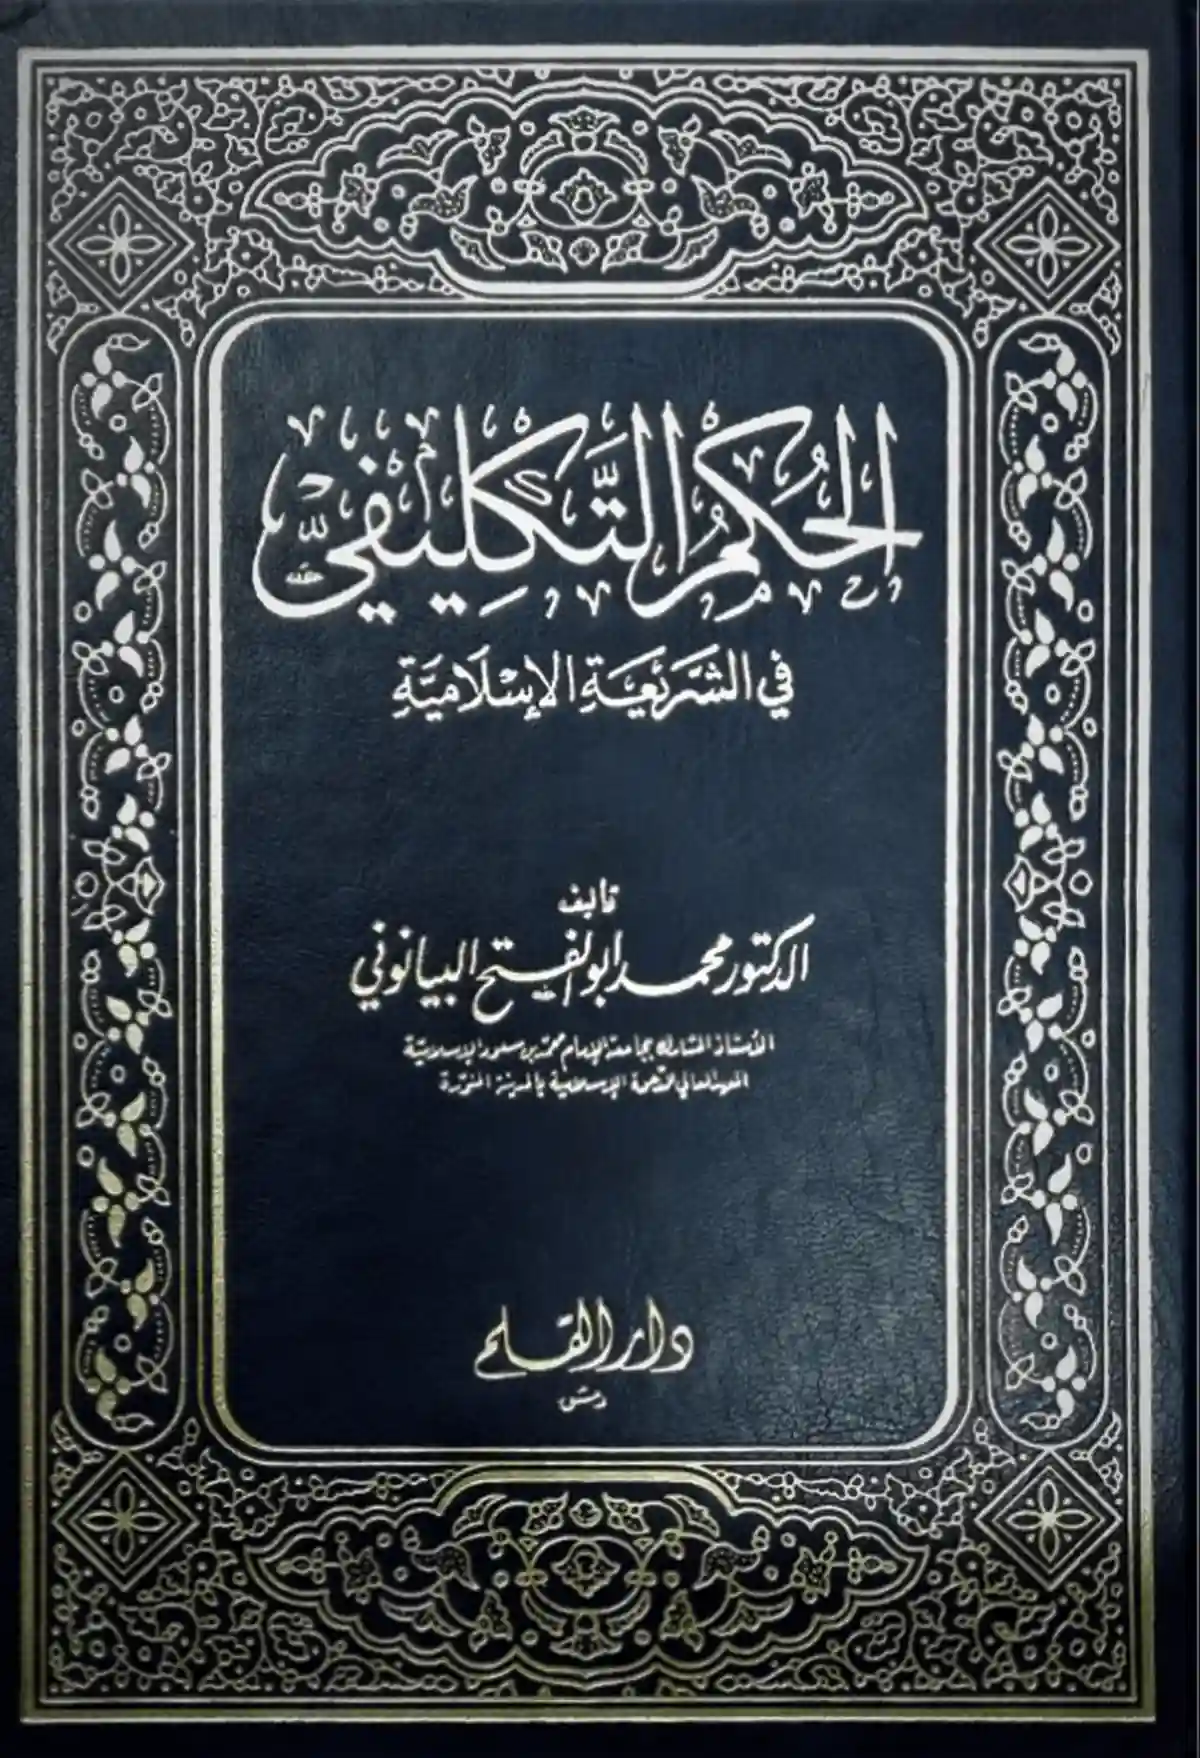 الحكم التكليفي في الشريعة الإسلامية - أ. د. محمد أبو الفتح البيانوني